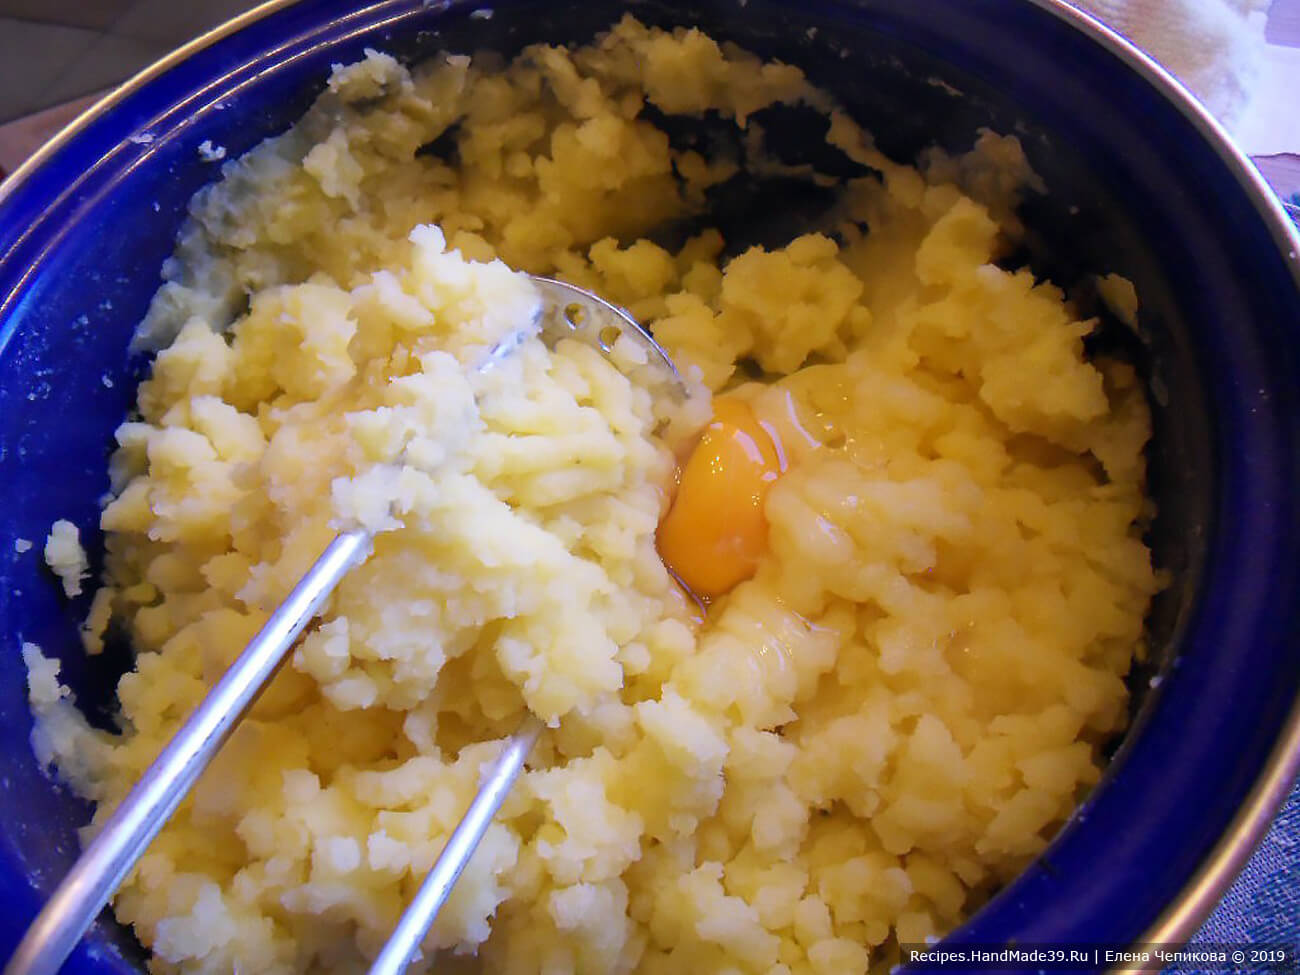 Горячий картофель размять, смешать с сырым яйцом. Посолить по вкусу